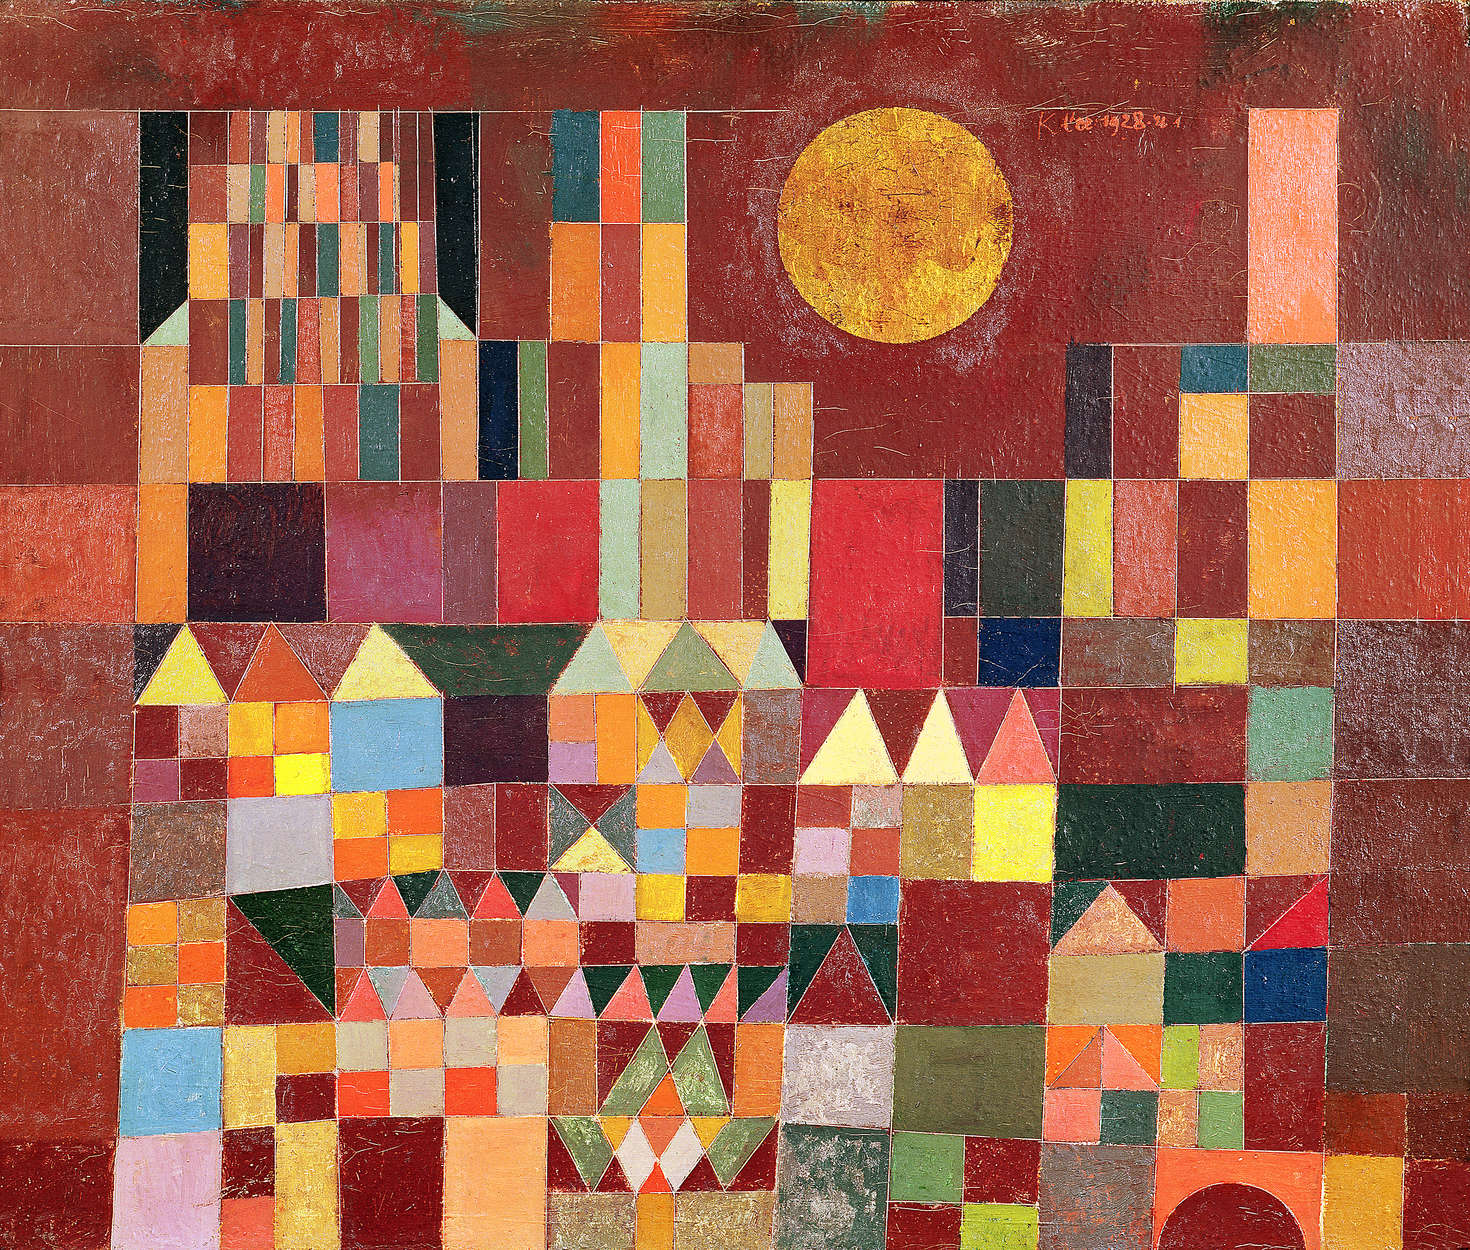             Fototapete "Burg und Sonne" von Paul Klee
        